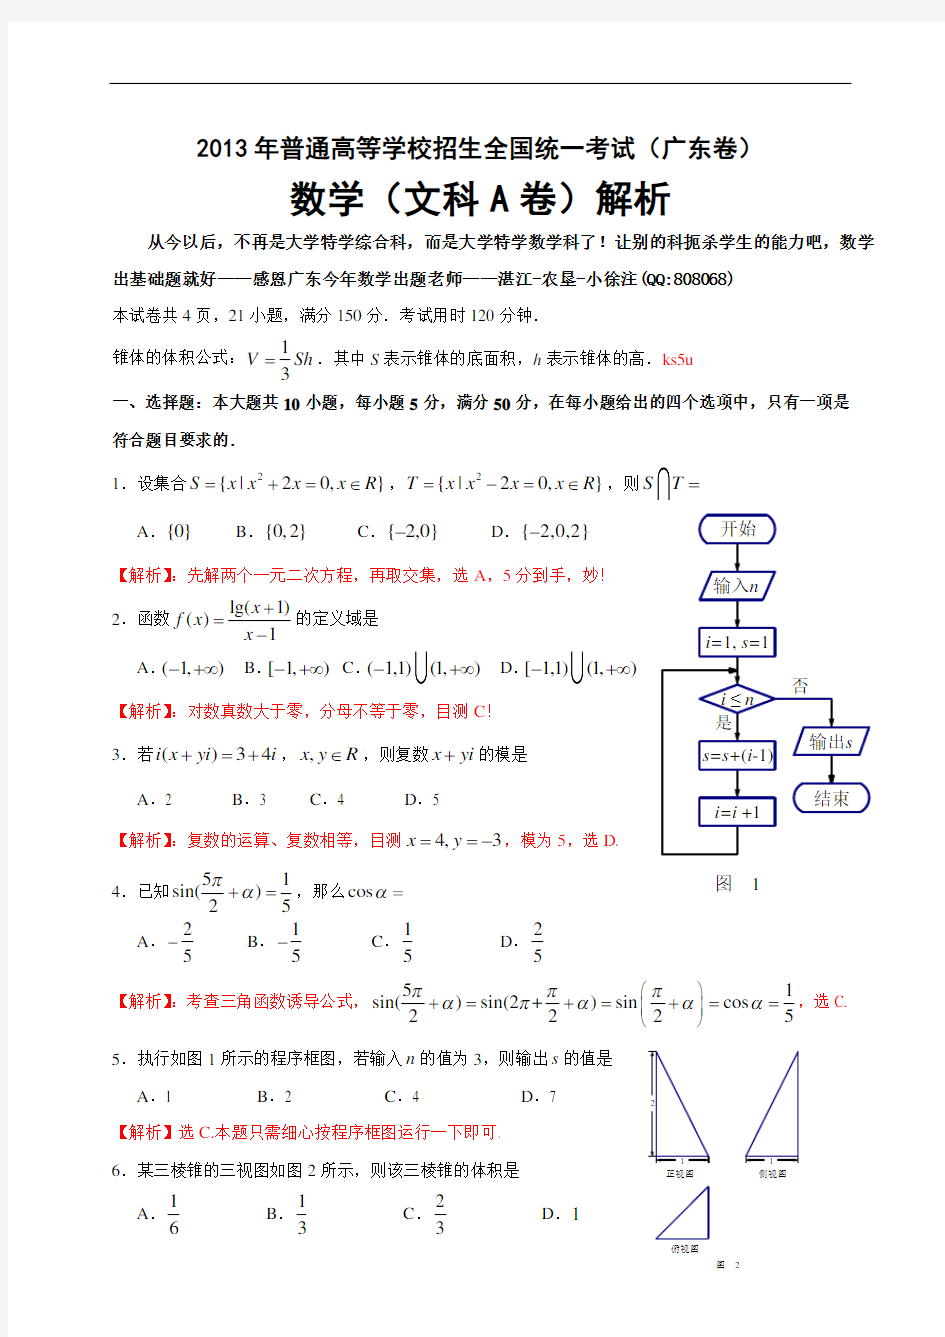 2013年高考真题——文科数学(广东卷A)解析版(1) Word版含答案